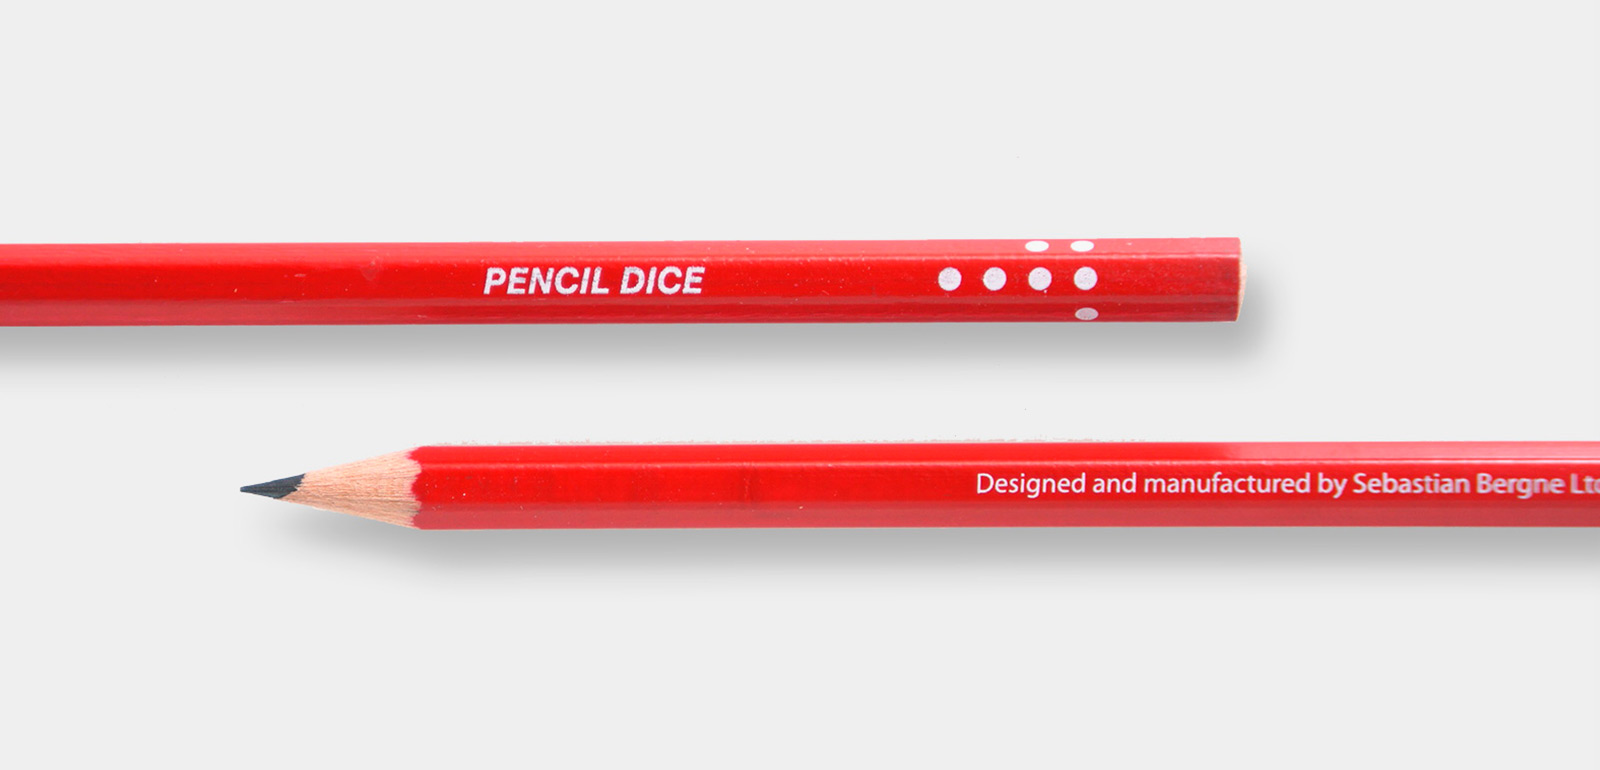 Pencil Dice